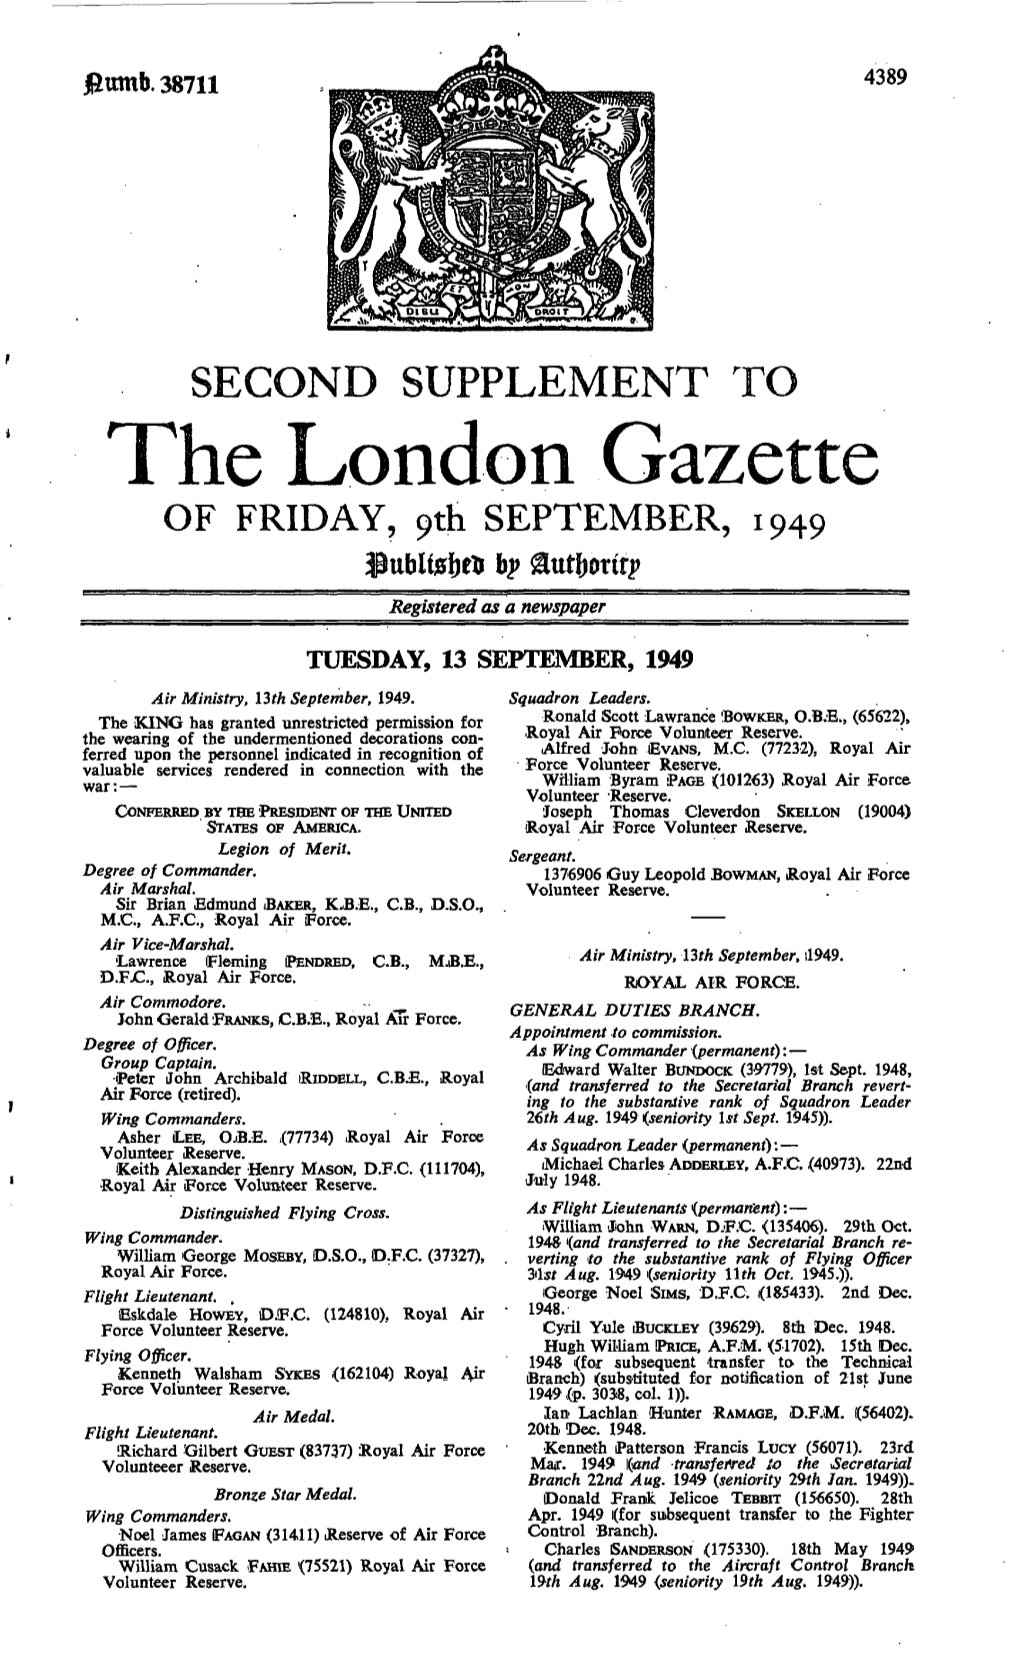 The London Gazette of FRIDAY, 9Th SEPTEMBER, 1949